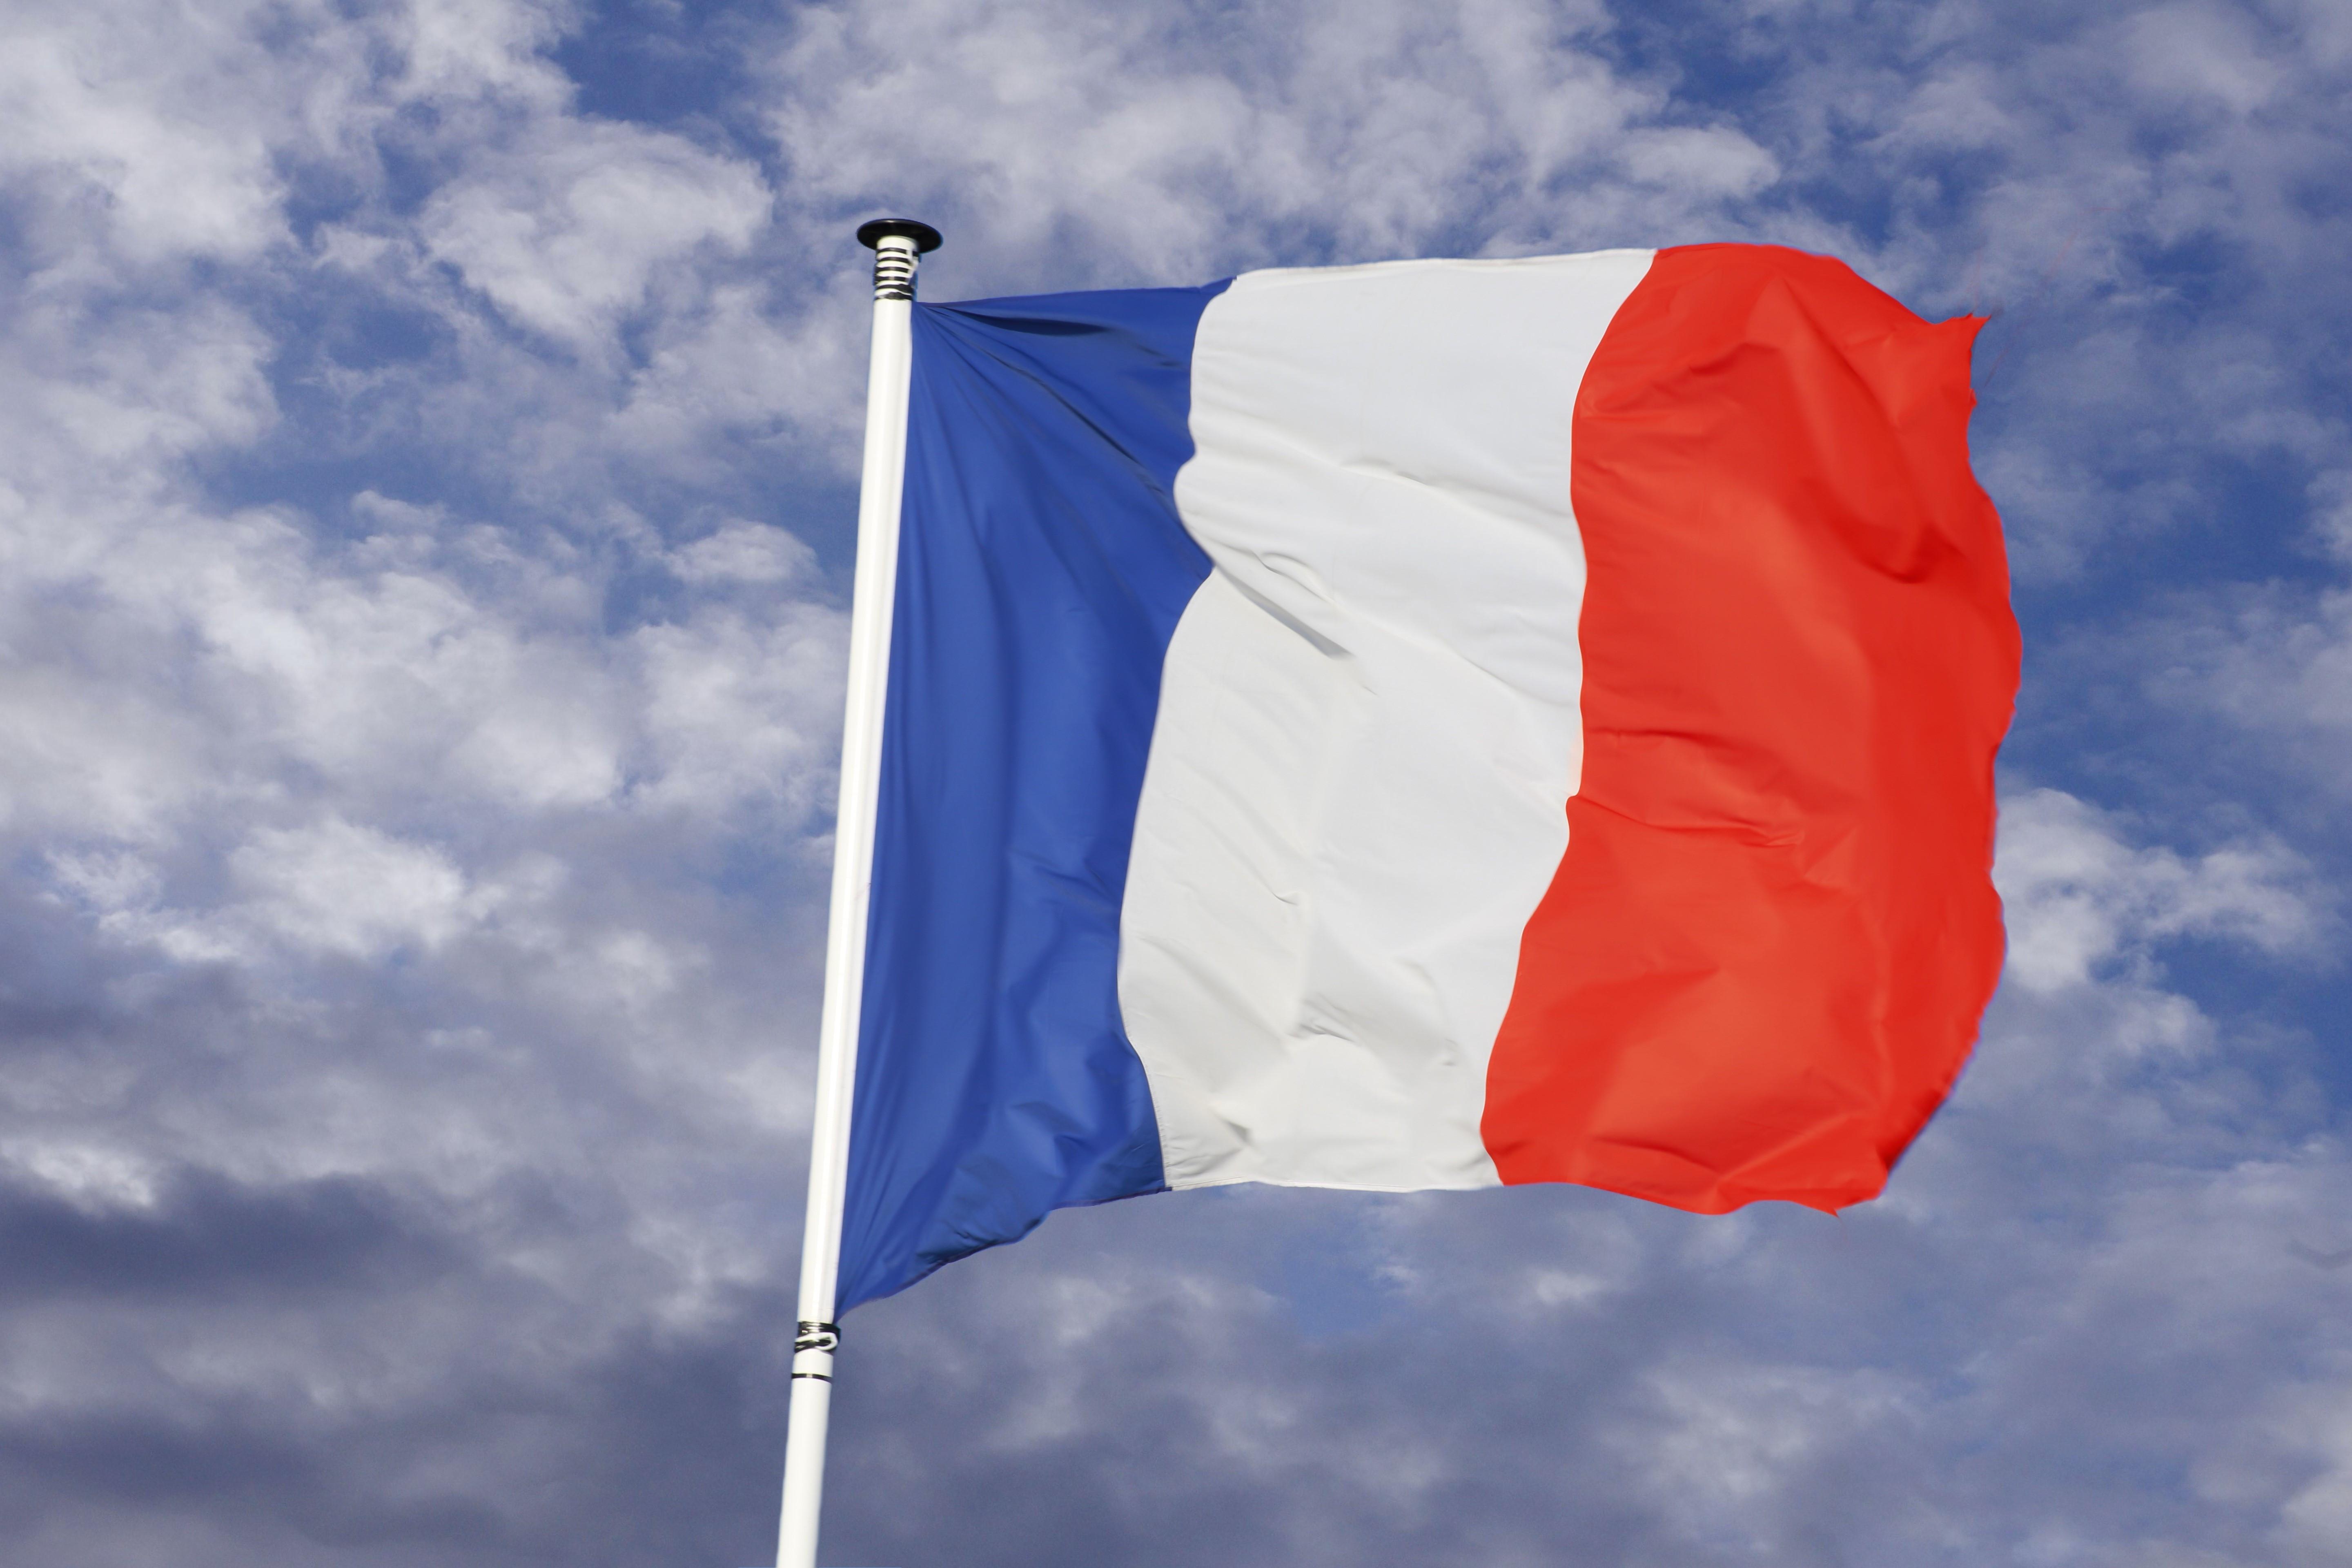 一国人口不如我国一个省:人口6700万的法国,究竟有多发达?